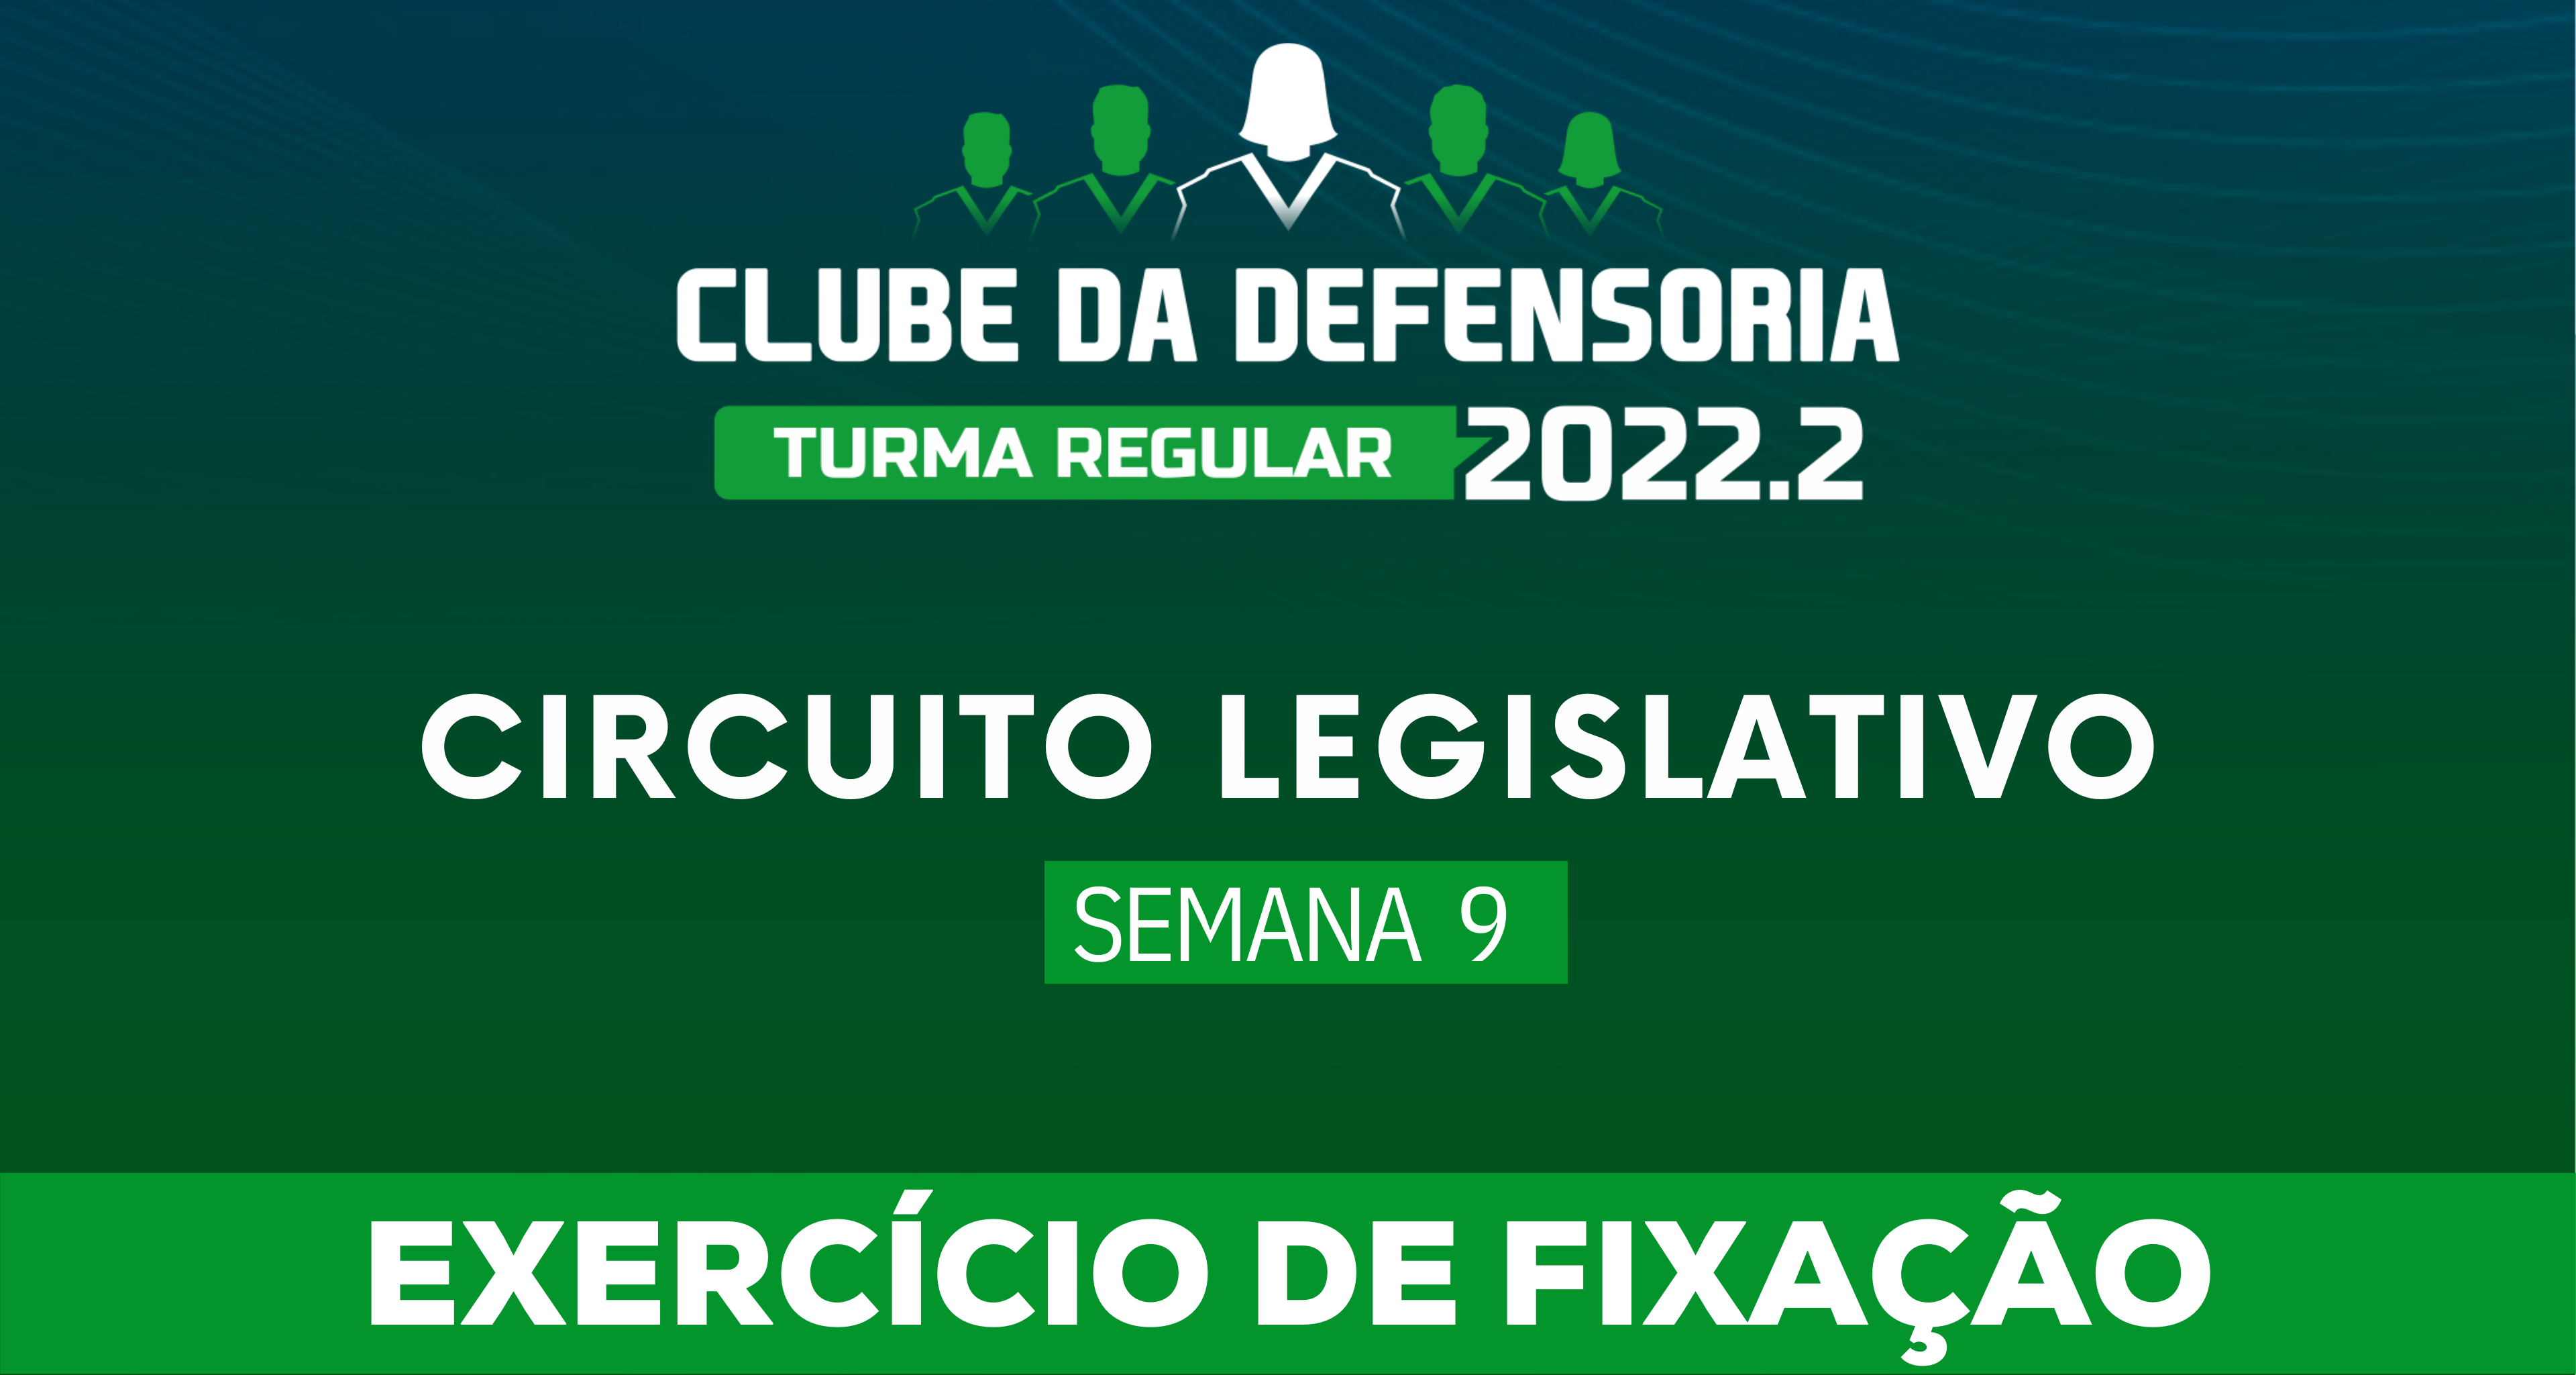 Circuito Legislativo 2022.2 (Clube da Defensoria - Semana 9)